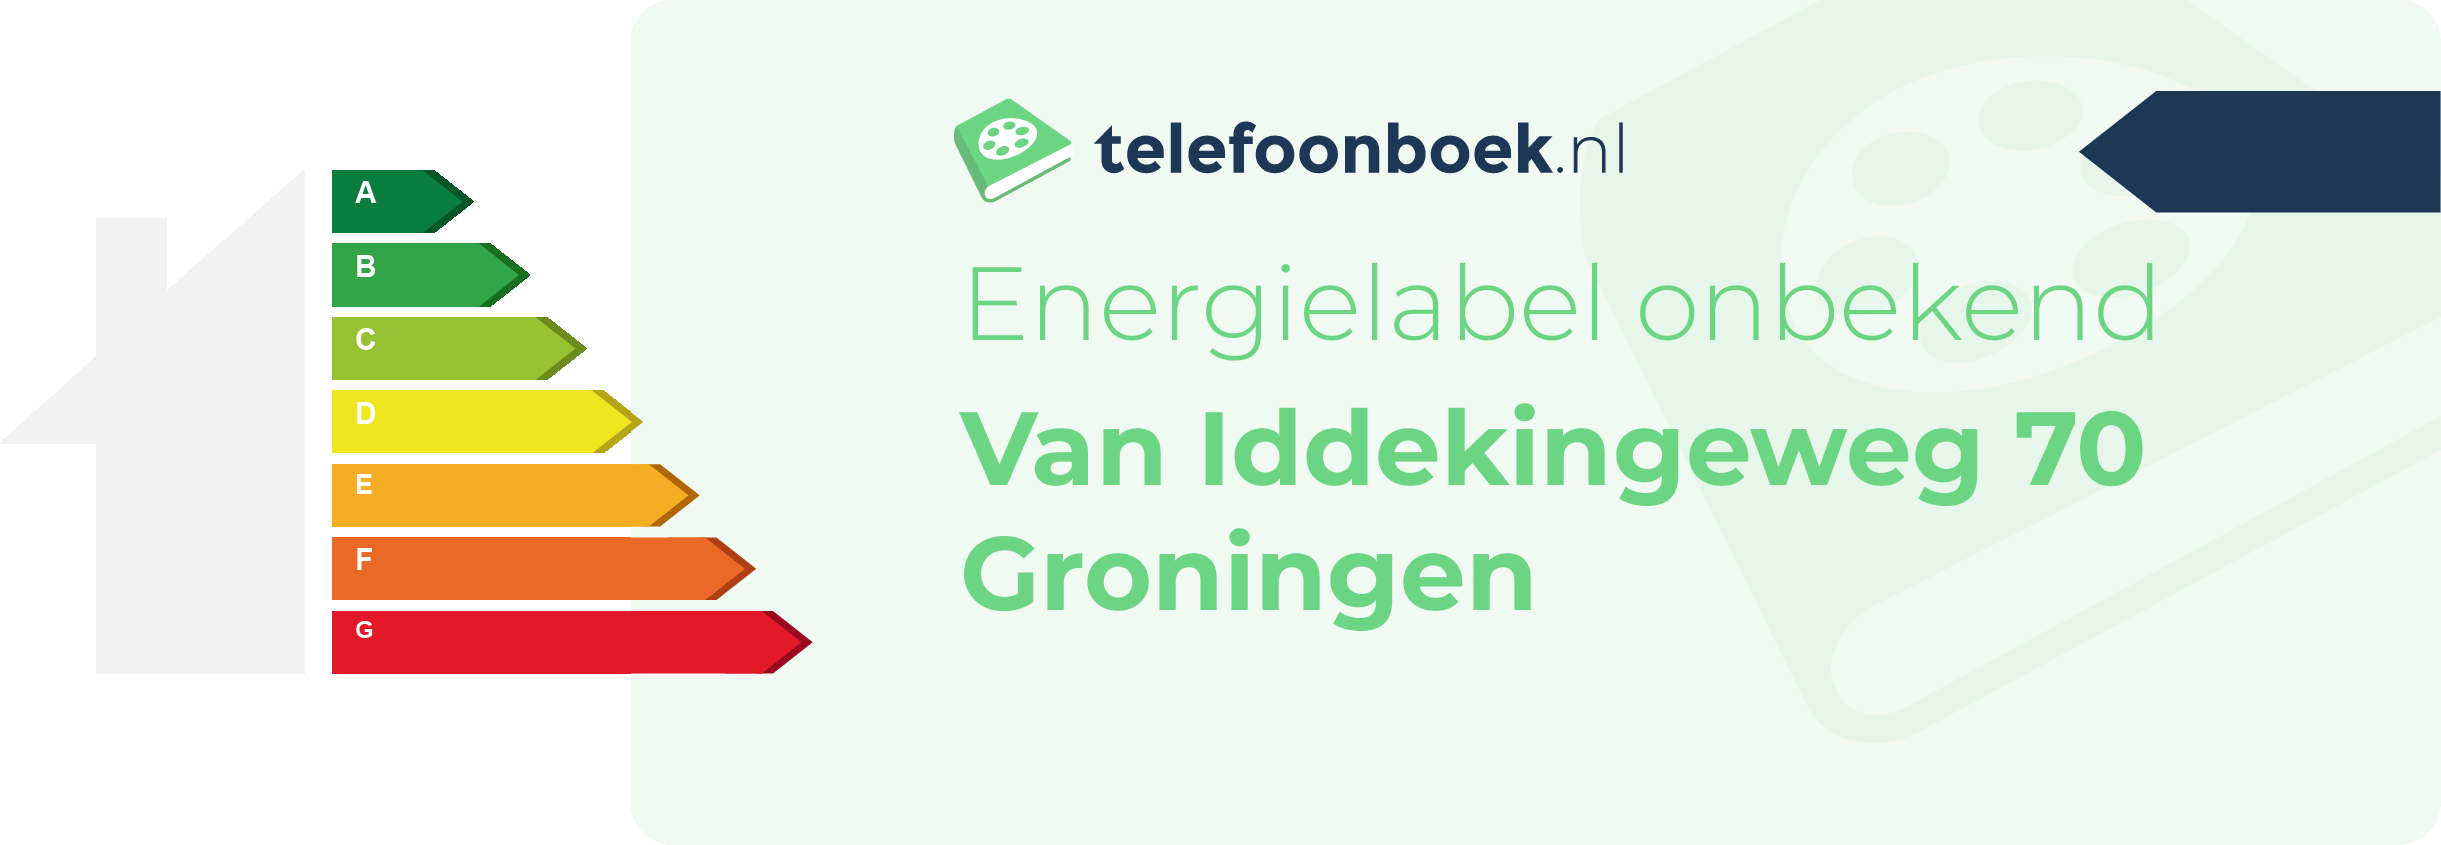 Energielabel Van Iddekingeweg 70 Groningen